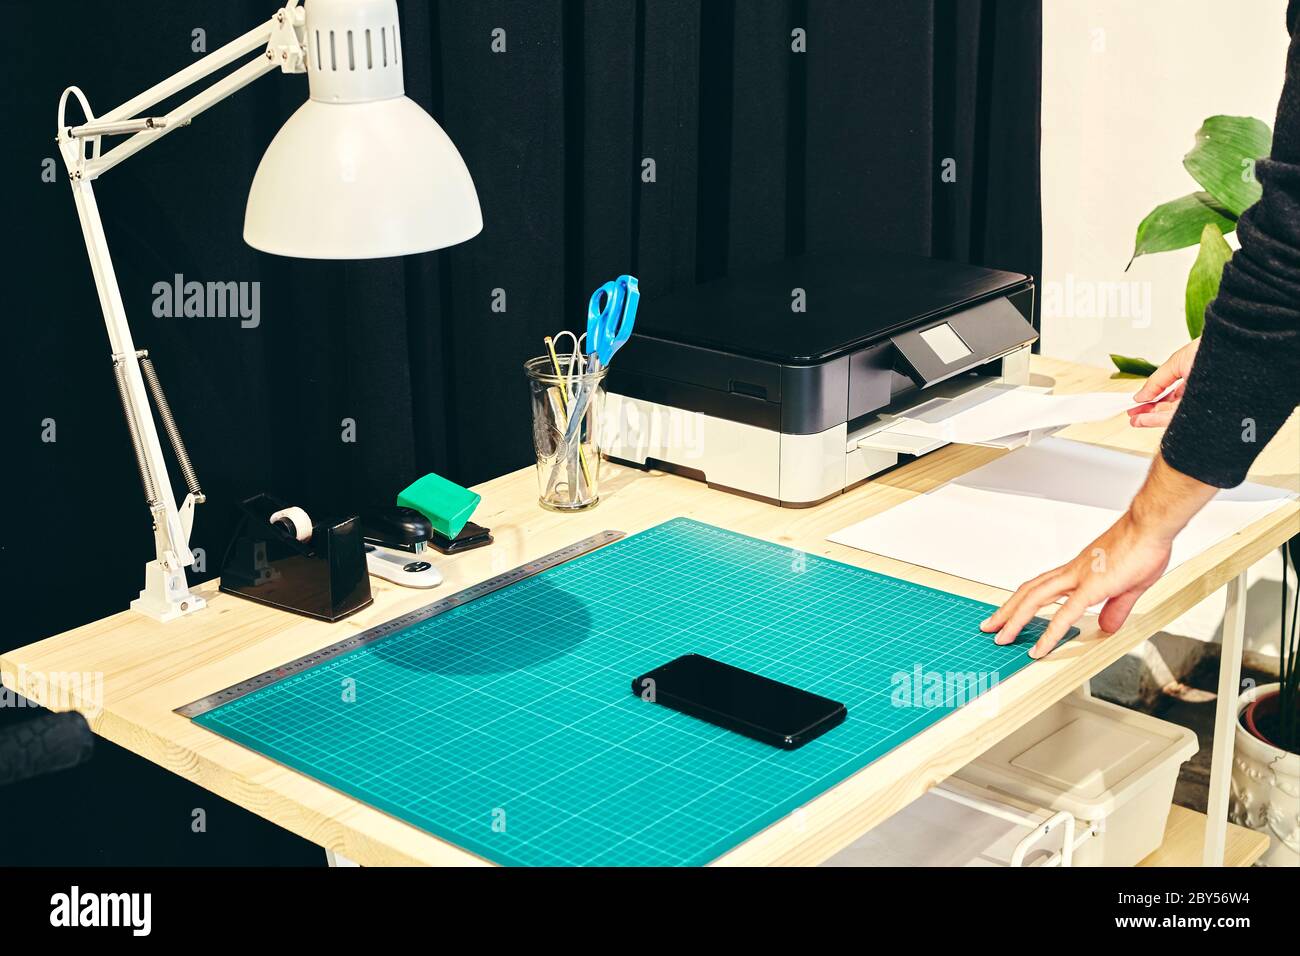 Espace de travail avec une personne à l'imprimante et un téléphone portable sur la table Banque D'Images